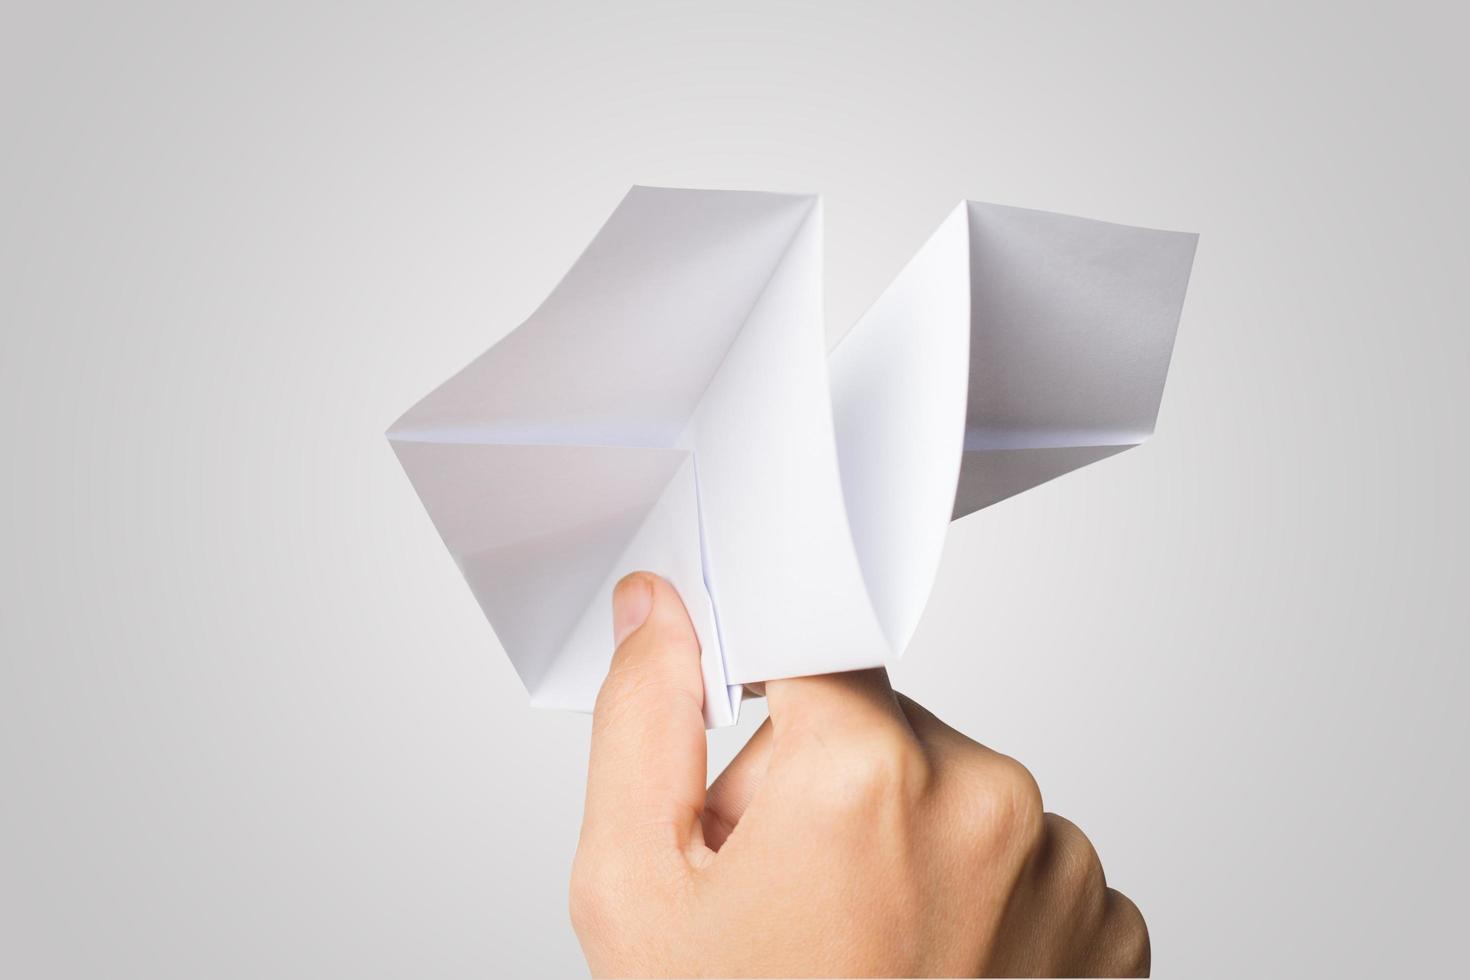 la mano di una donna tiene un aeroplano di carta su sfondo bianco foto